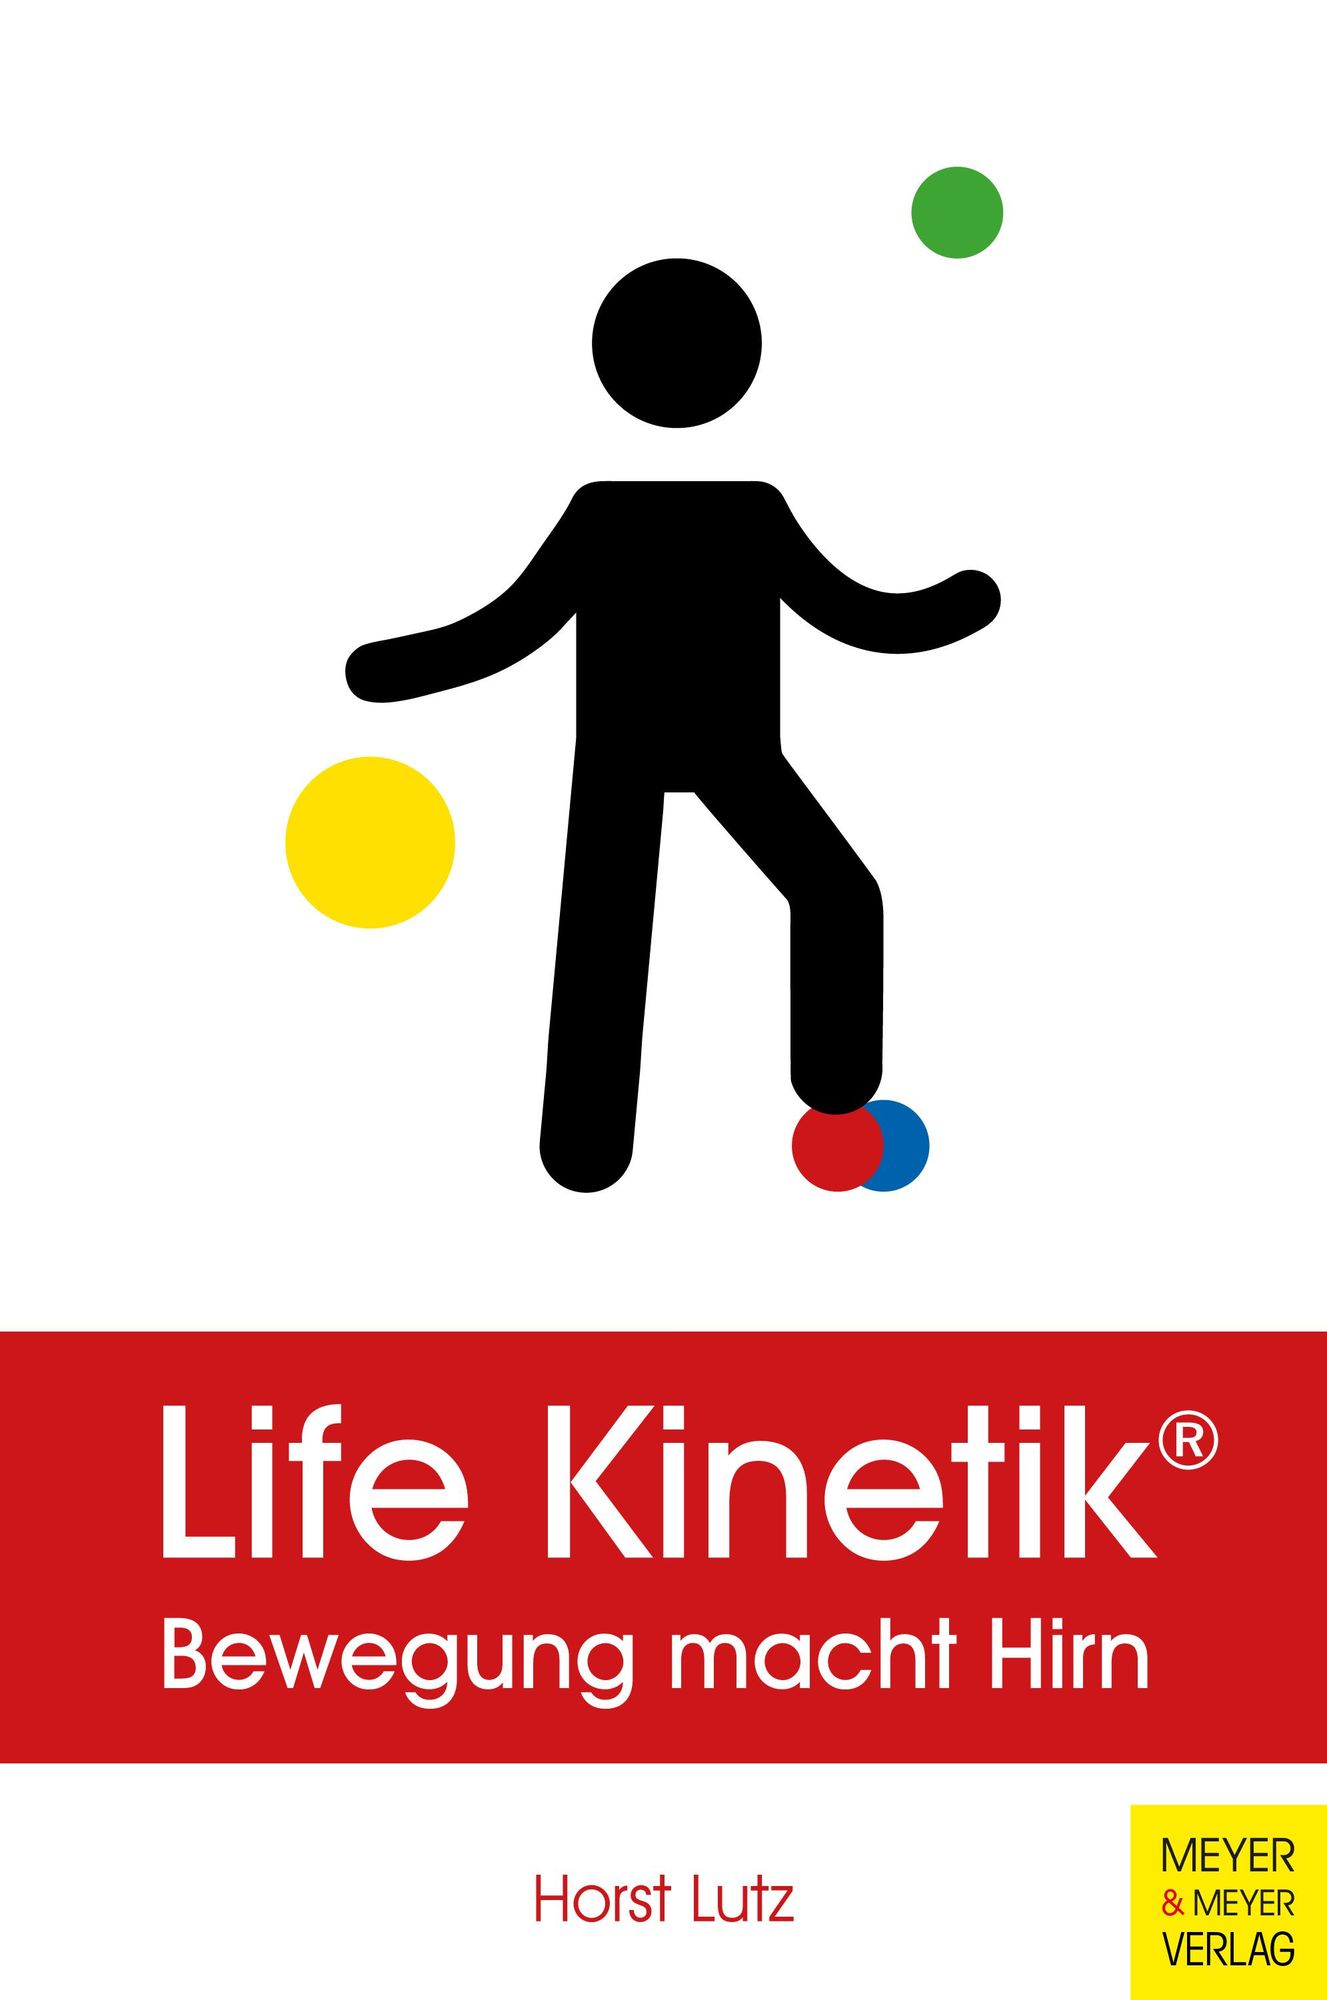 Life Kinetik®: Networking für das Gehirn